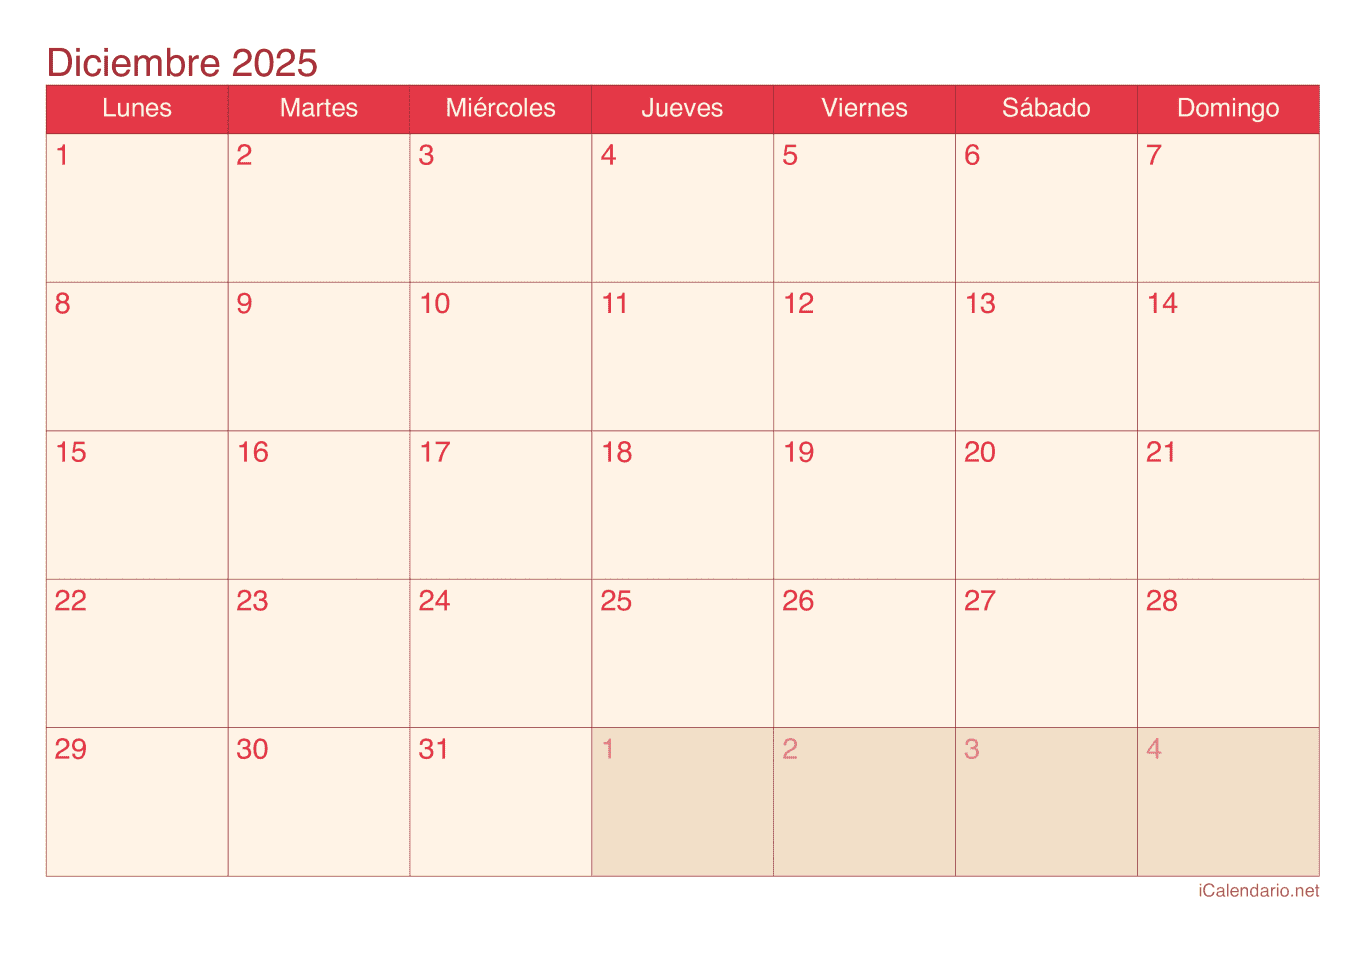 Calendario de diciembre 2025 - Cherry